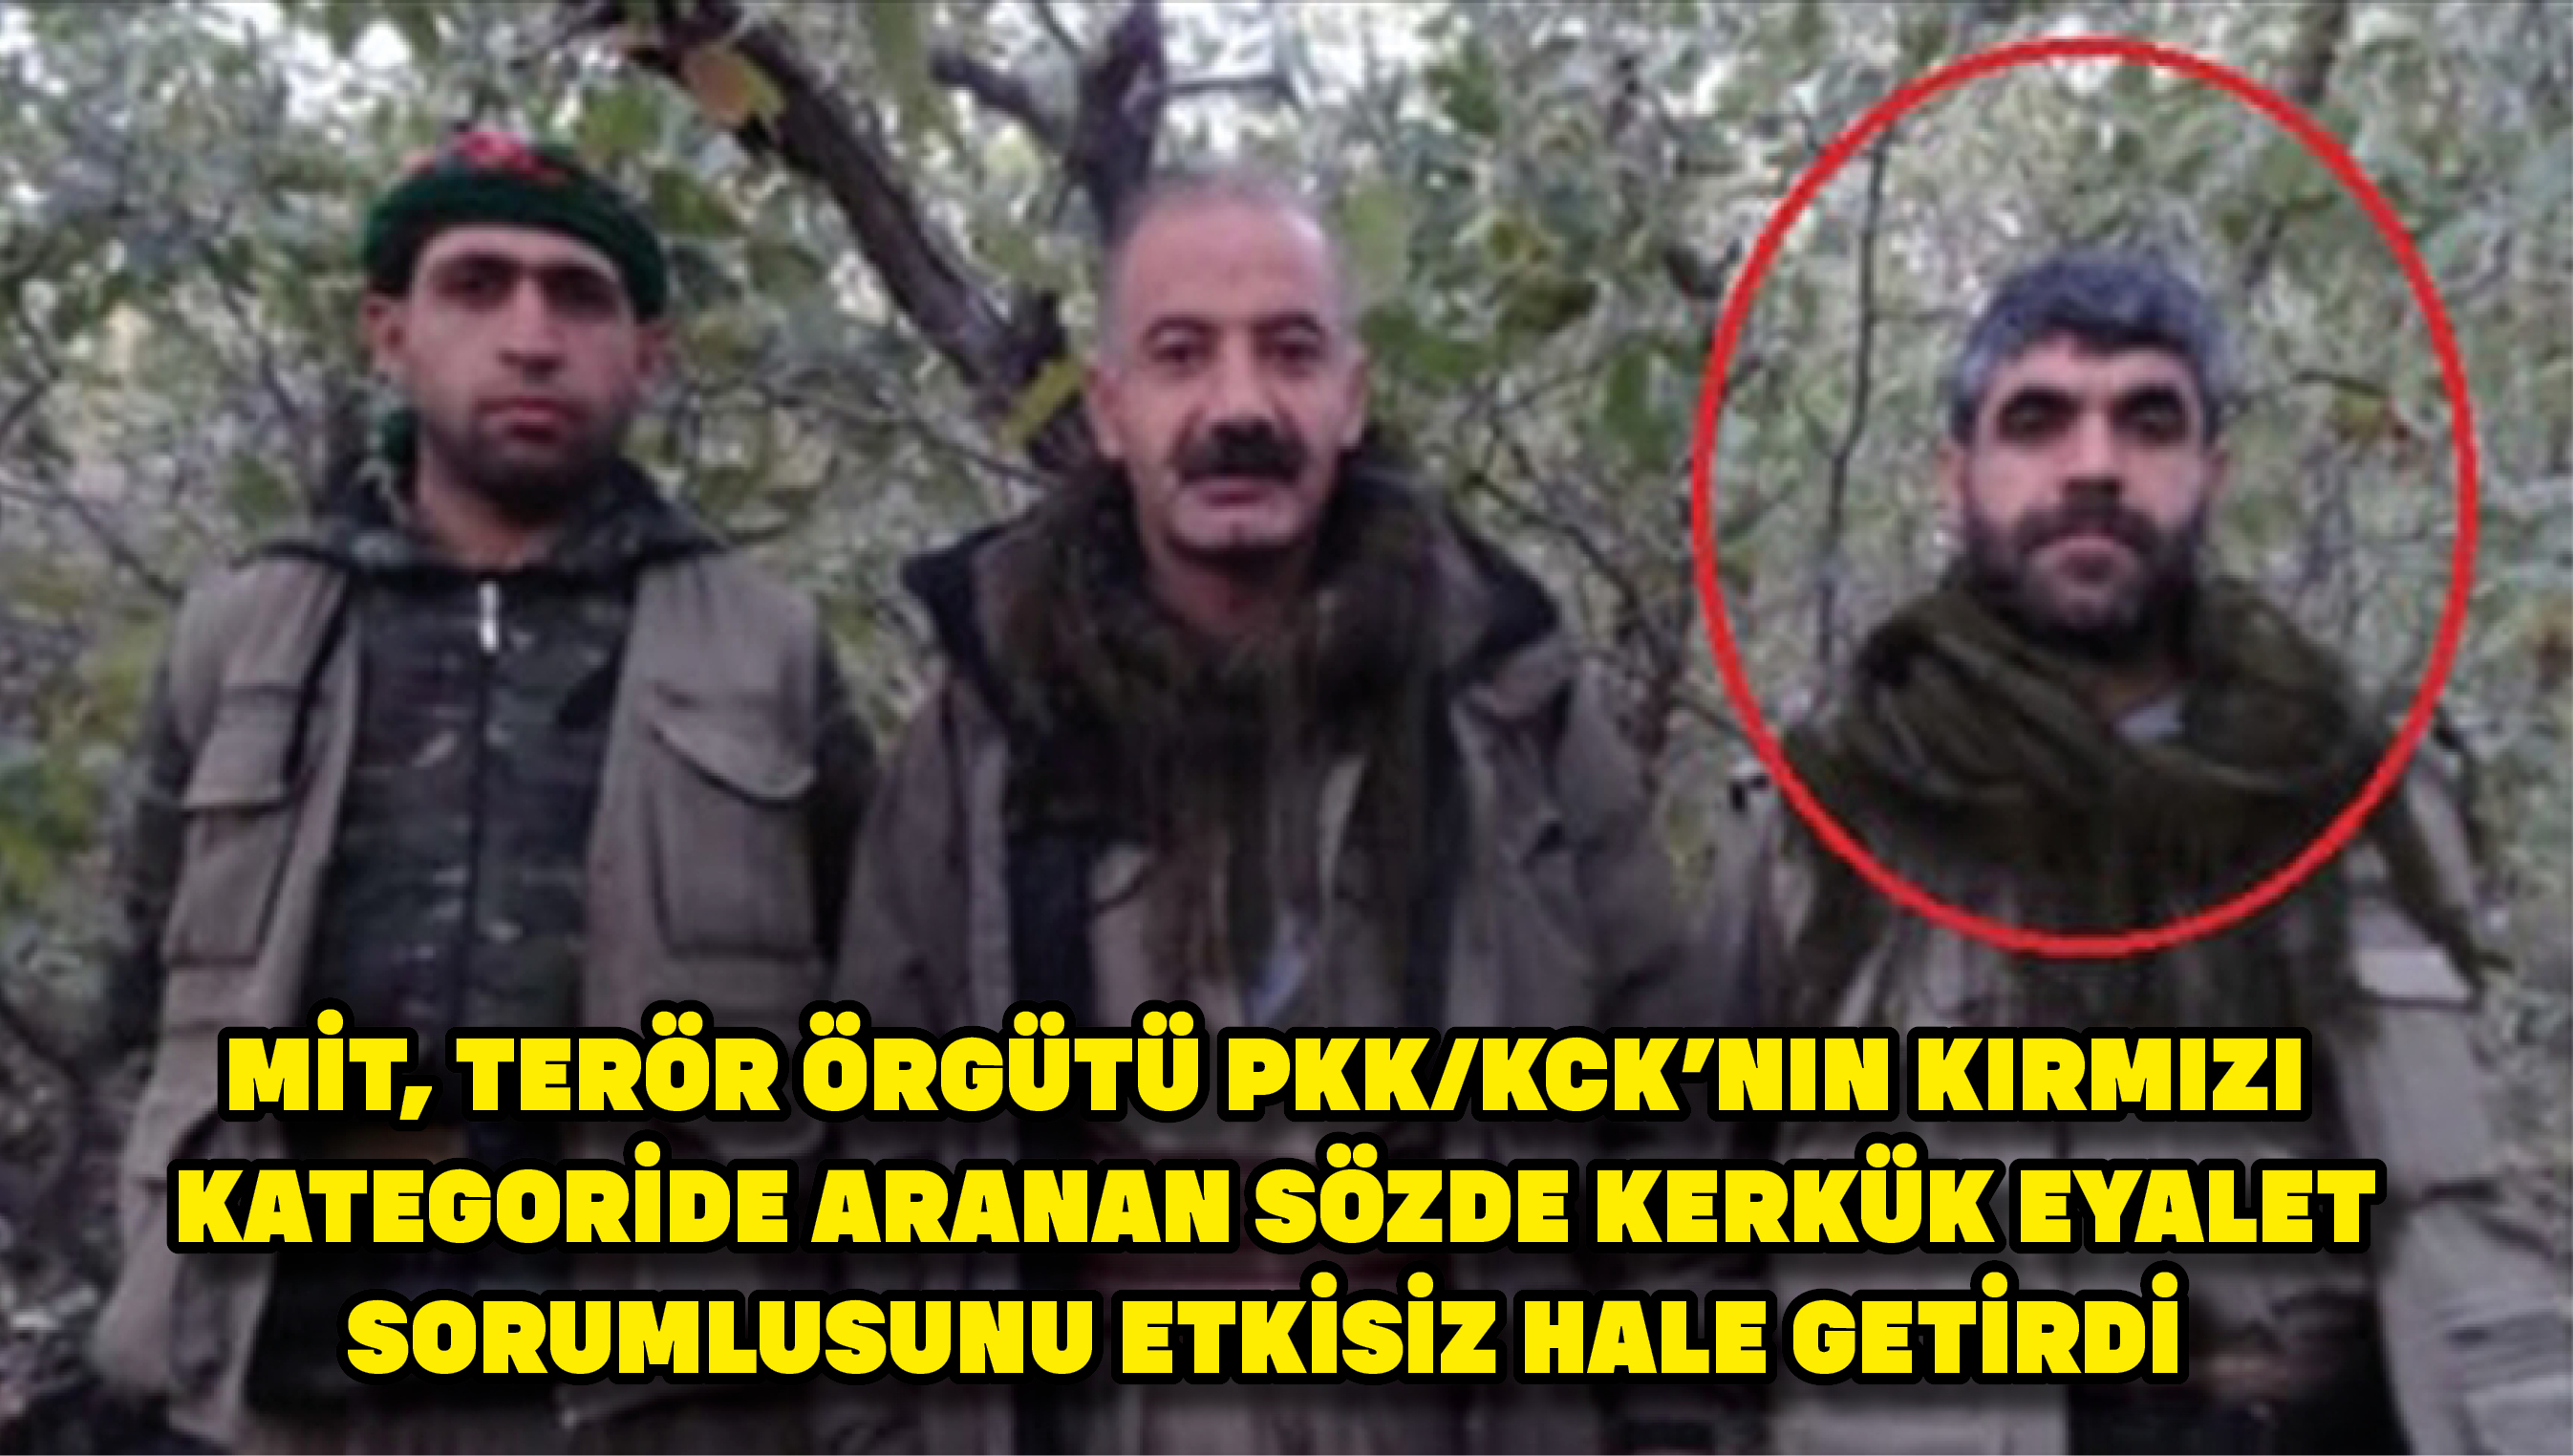 MİT, terör örgütü PKK/KCK’nın kırmızı kategoride aranan sözde Kerkük eyalet sorumlusunu etkisiz hale getirdi